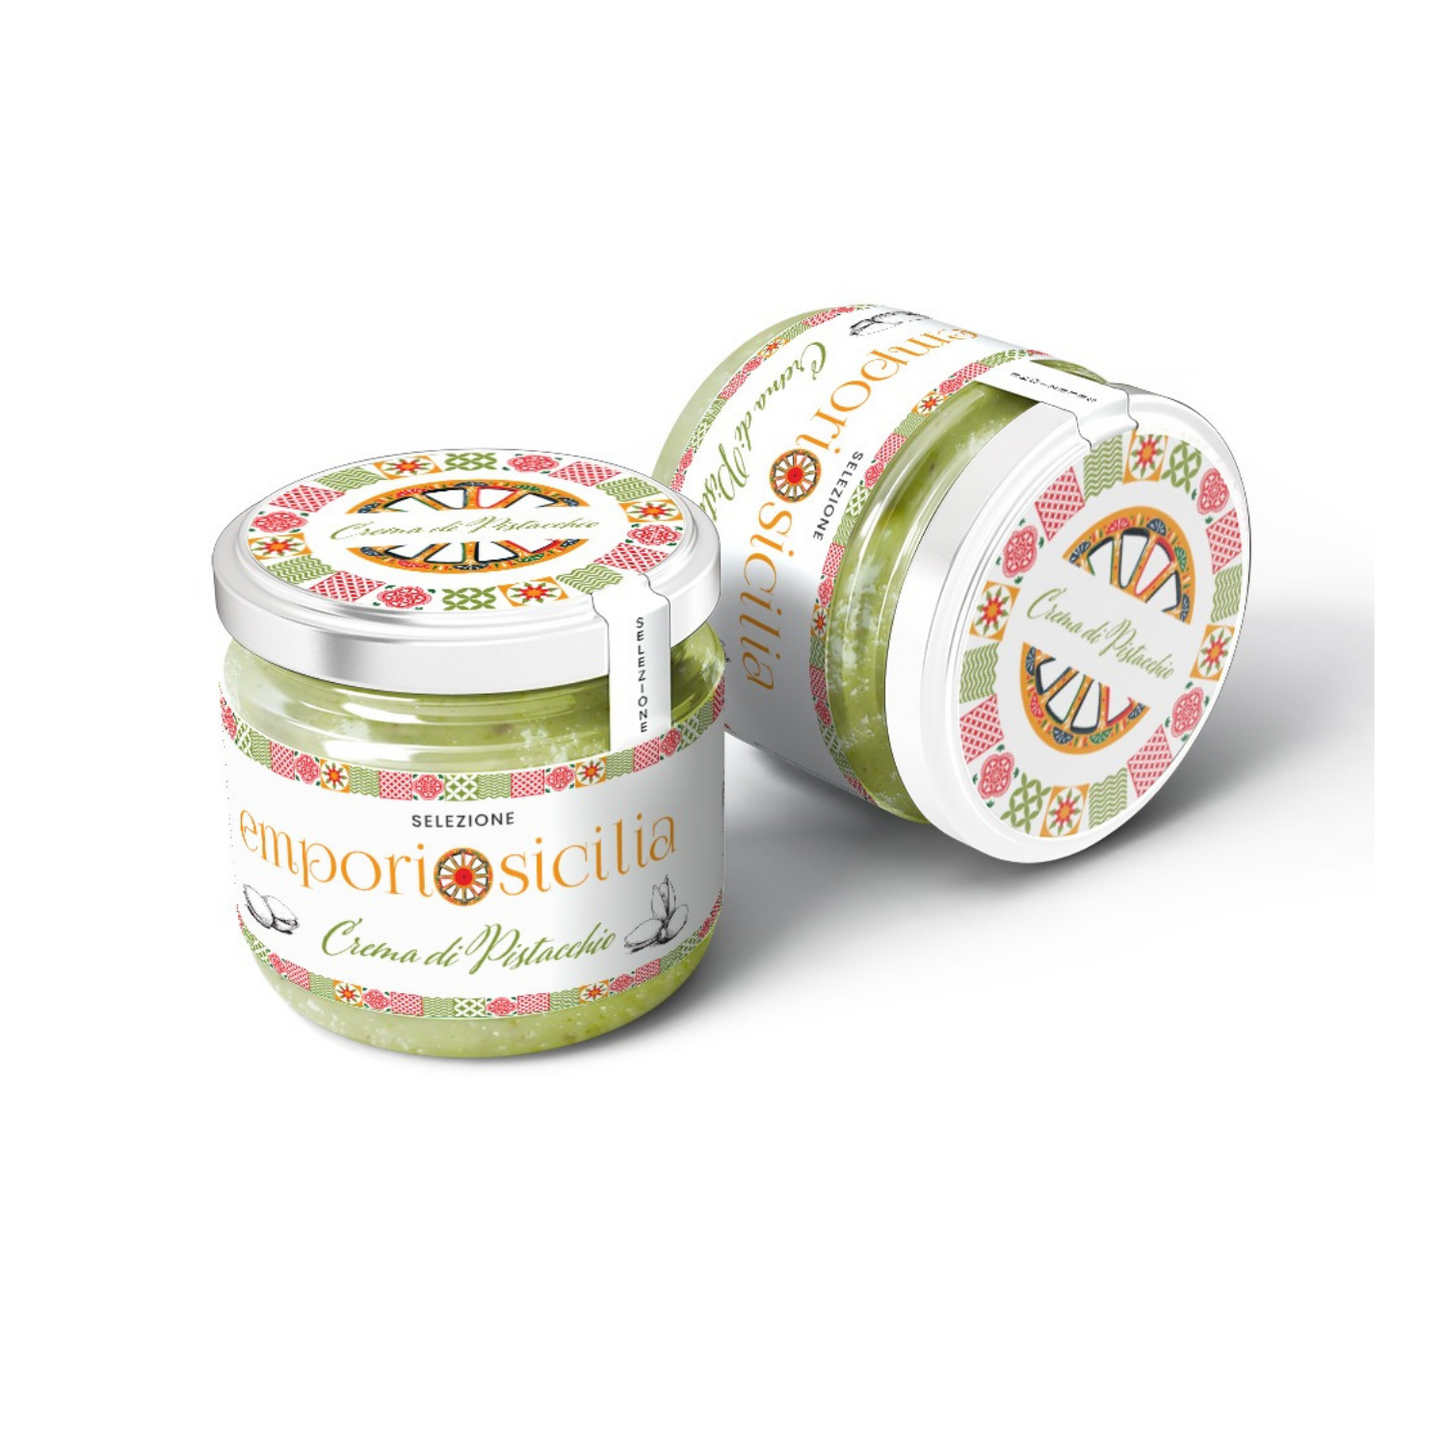 Sicilian Pistachio Cream - Emporio Sicilia